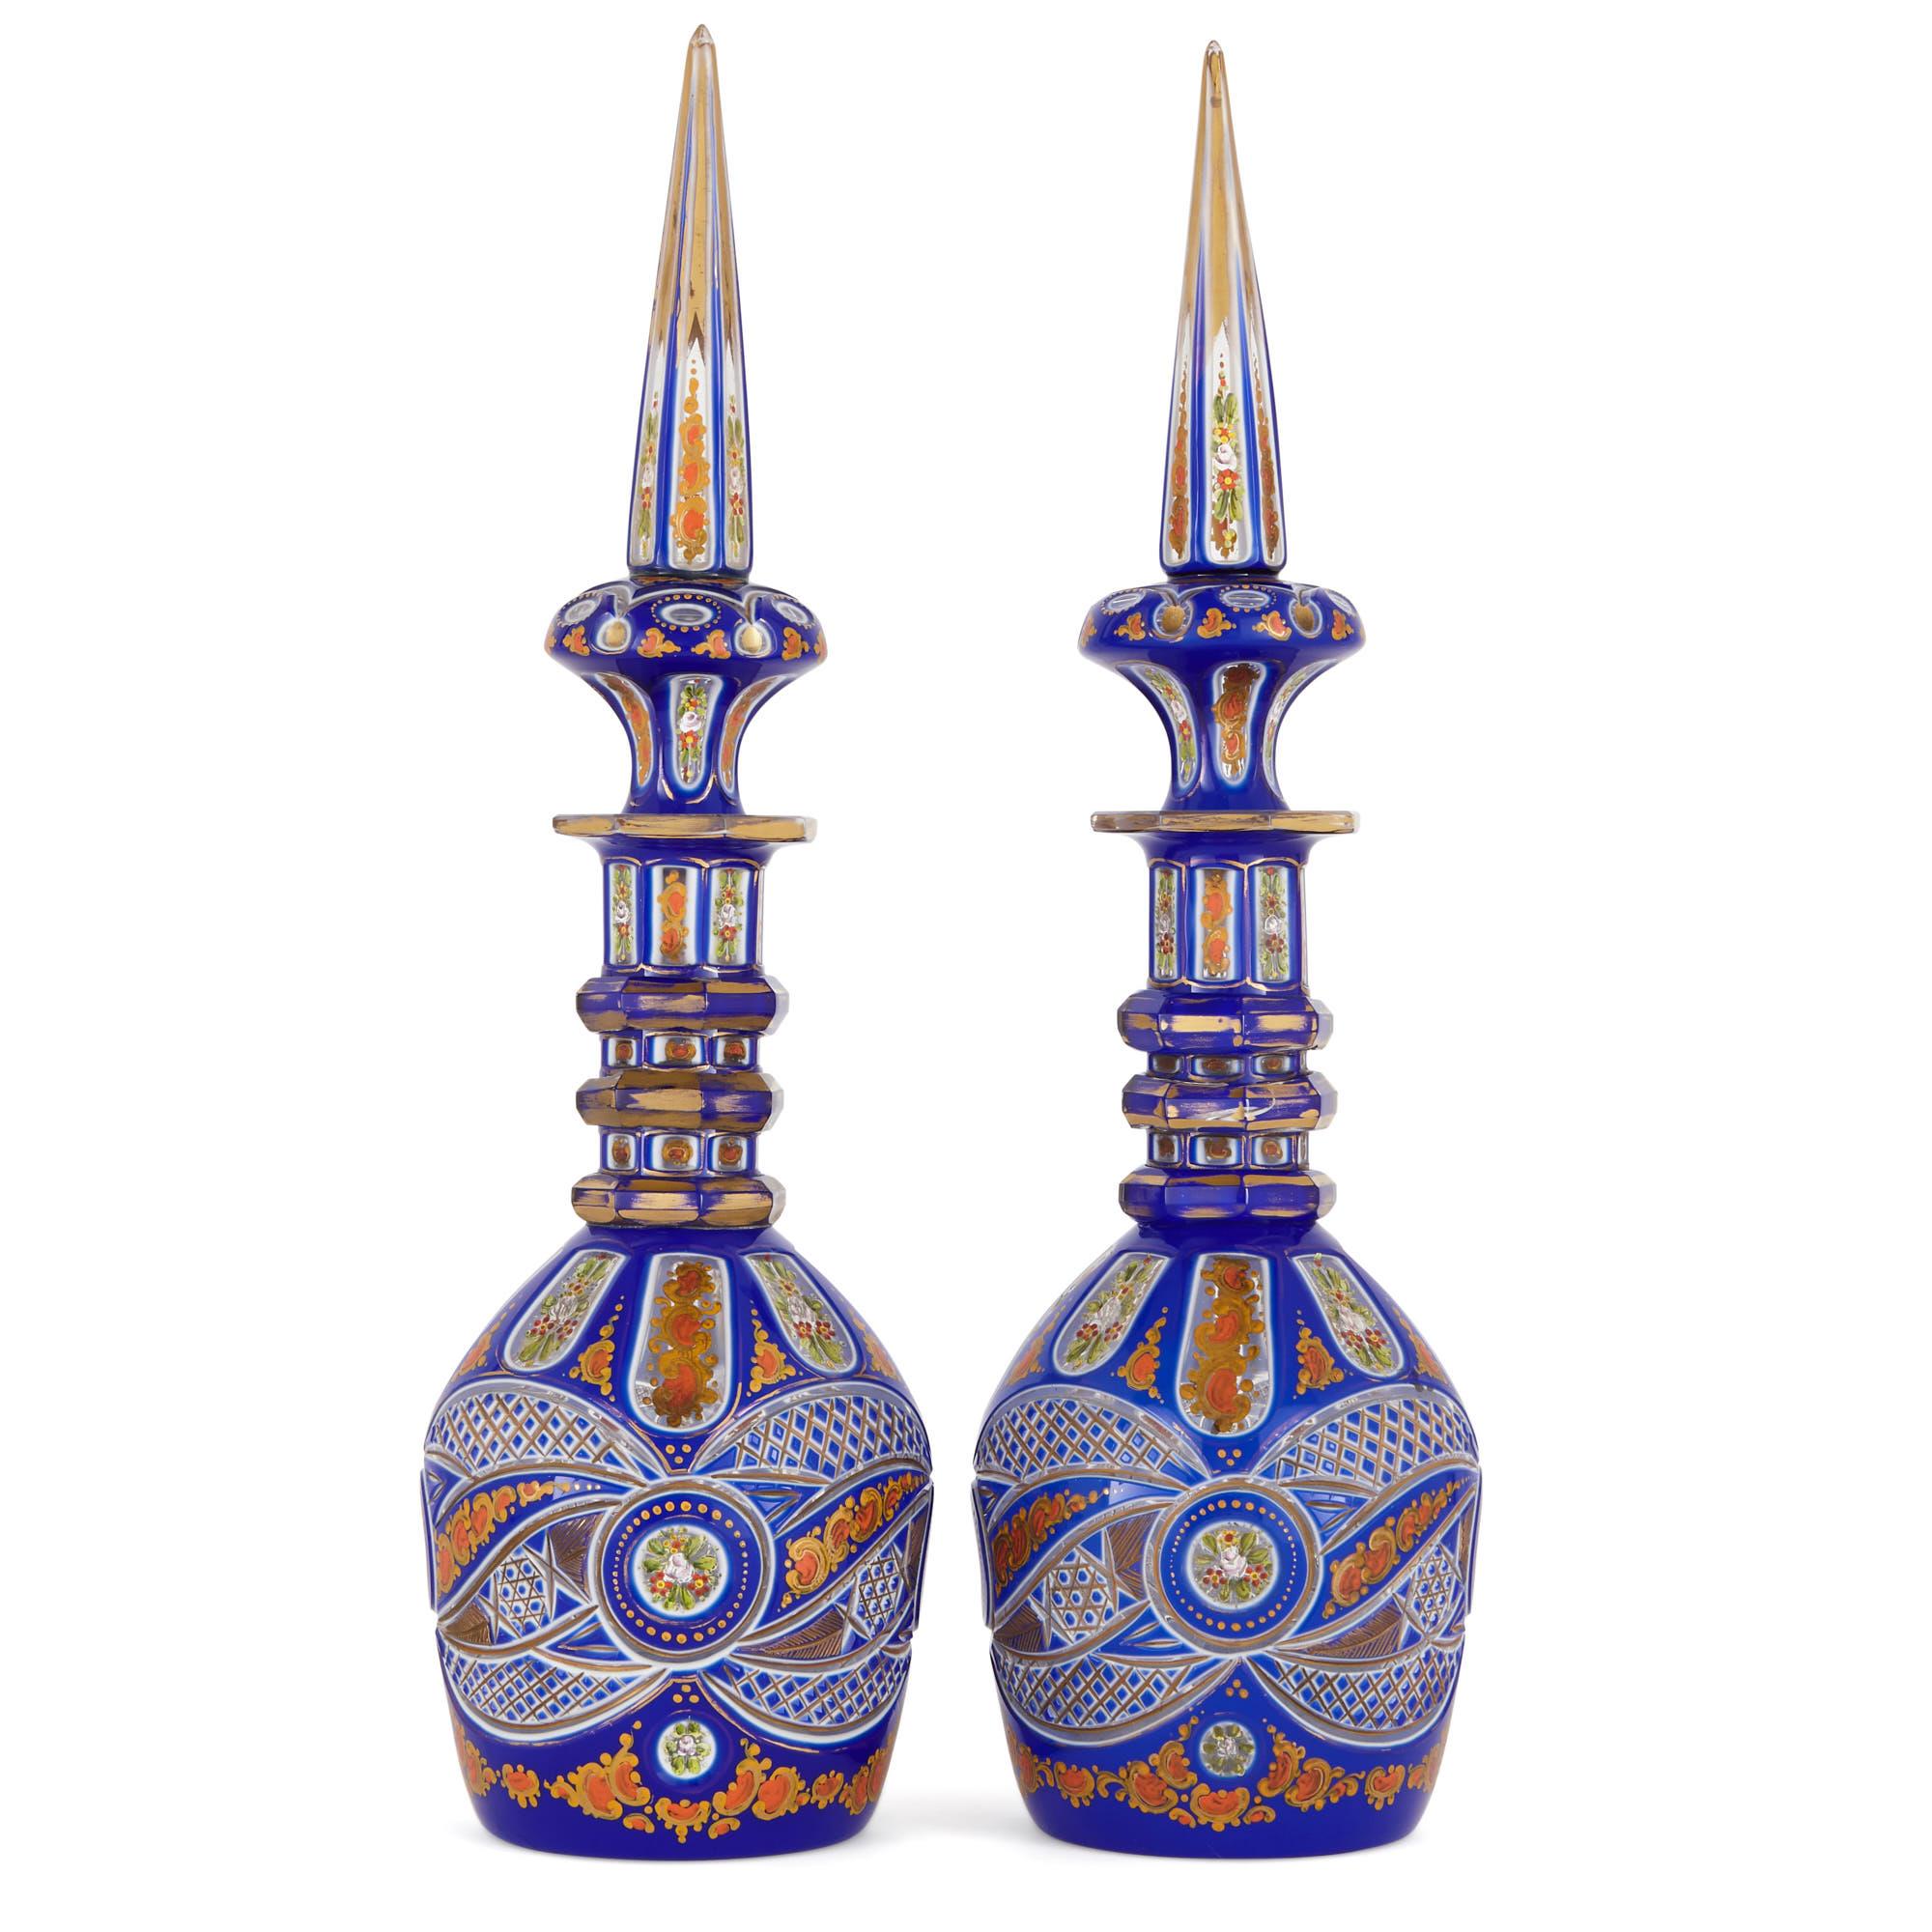 Diese farbenprächtigen Glaskaraffen wurden im späten 19. Jahrhundert in Böhmen (der heutigen Tschechischen Republik) hergestellt. Seit Jahrhunderten wird das böhmische Glas für seine hochwertige Verarbeitung und seine schönen Ornamente